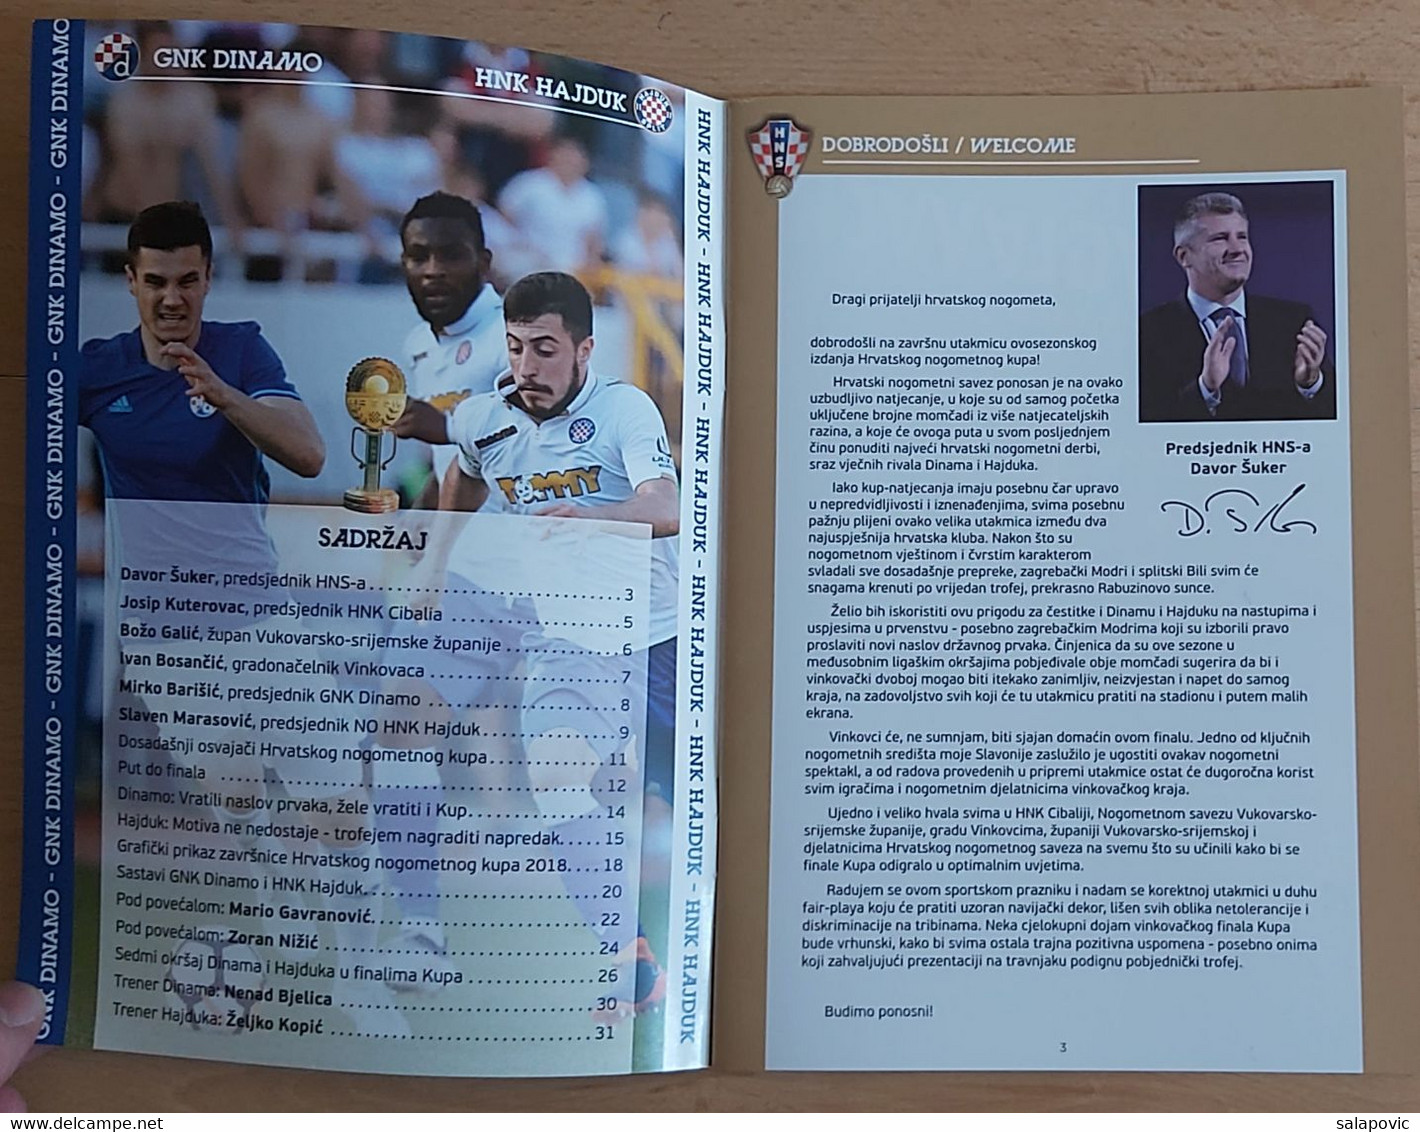 GNK DINAMO ZAGREB - HNK HAJDUK SPLIT 2018 Finals Of The Croatian Football Cup FOOTBALL CROATIA FOOTBALL MATCH PROGRAM - Books